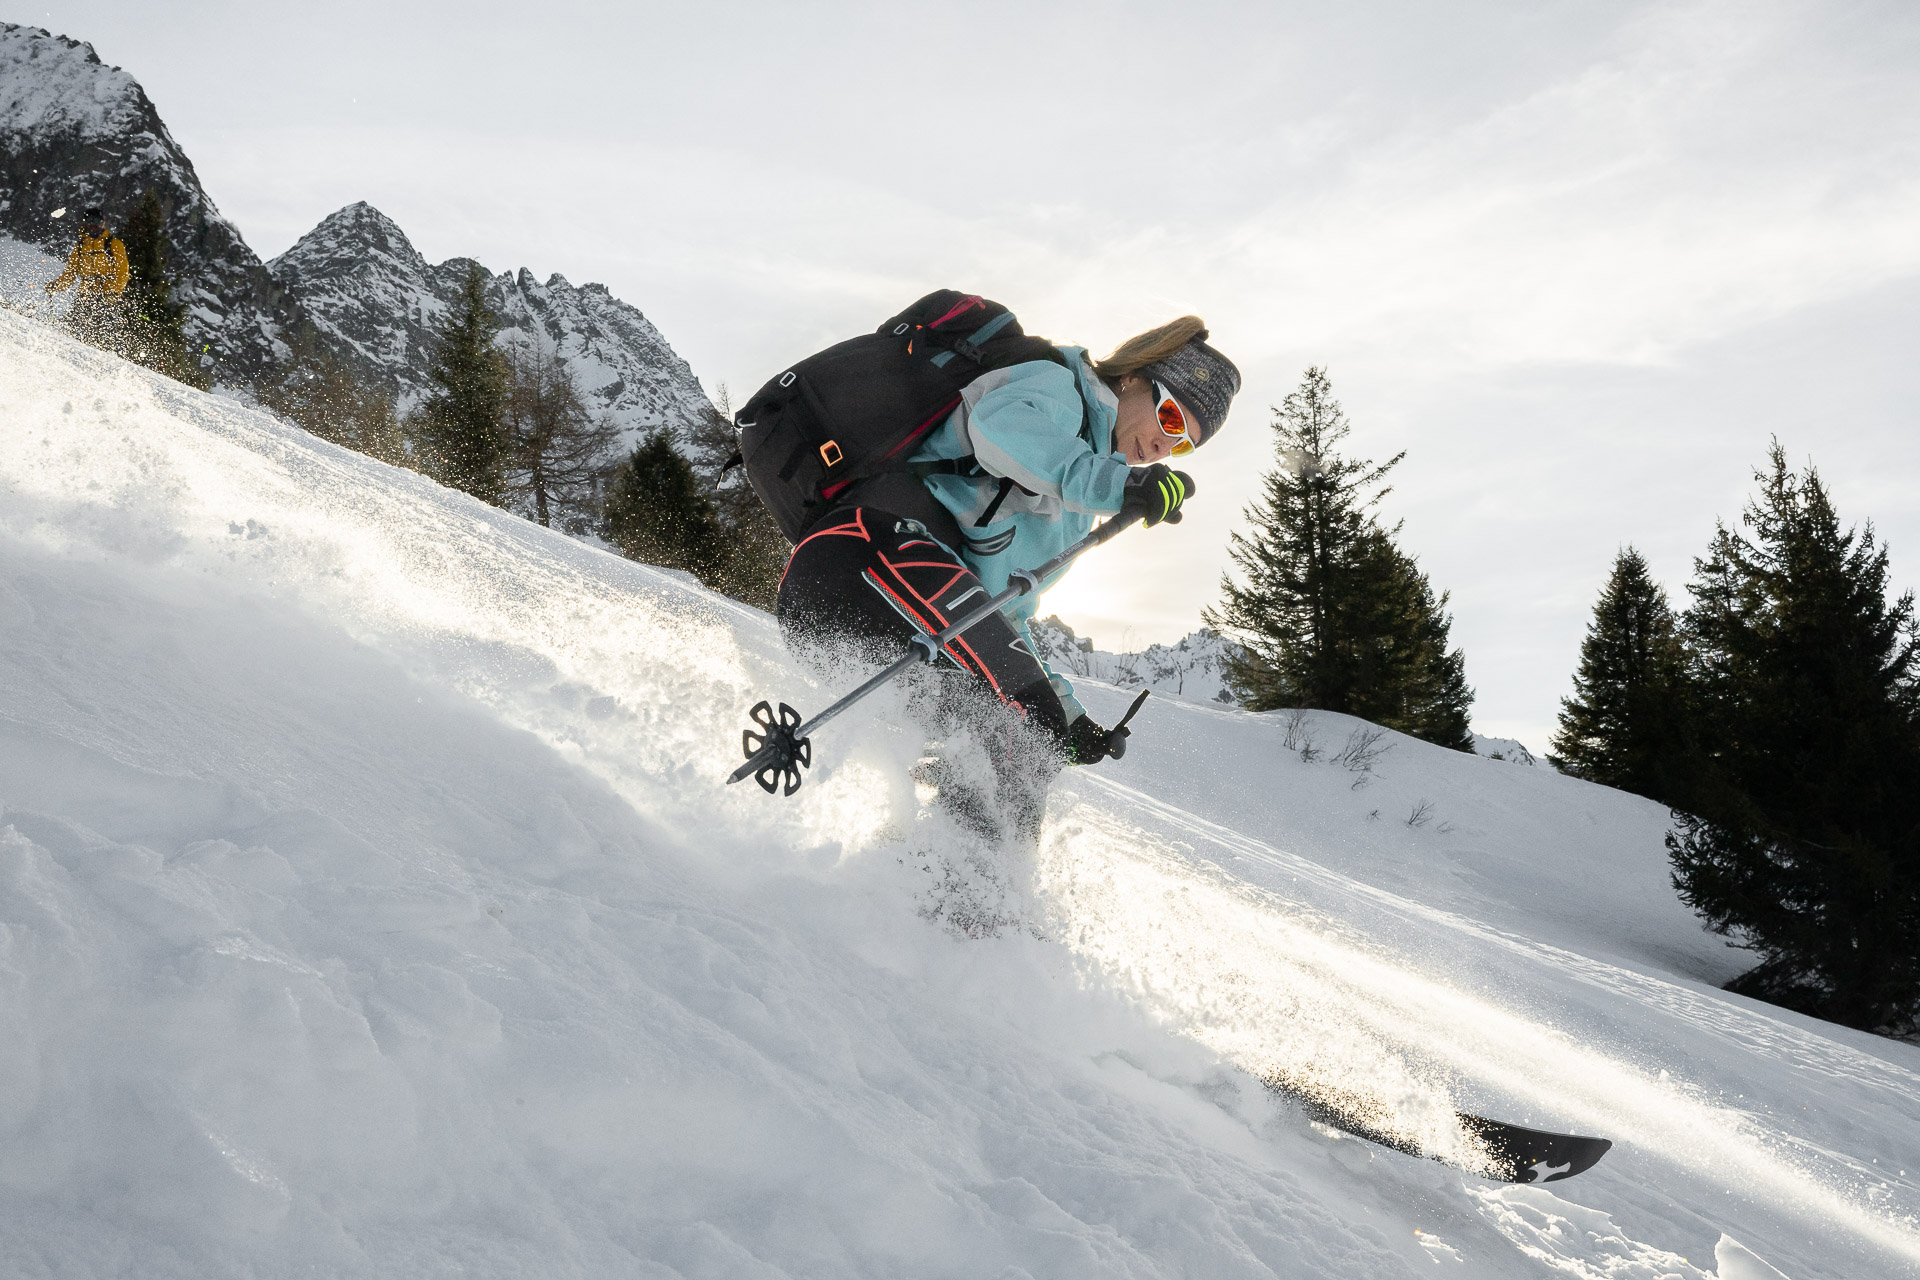 Autotorino e Skimofestival: partnership e test-drive sulla neve in Valtellina, con gli amanti dello scialpinismo